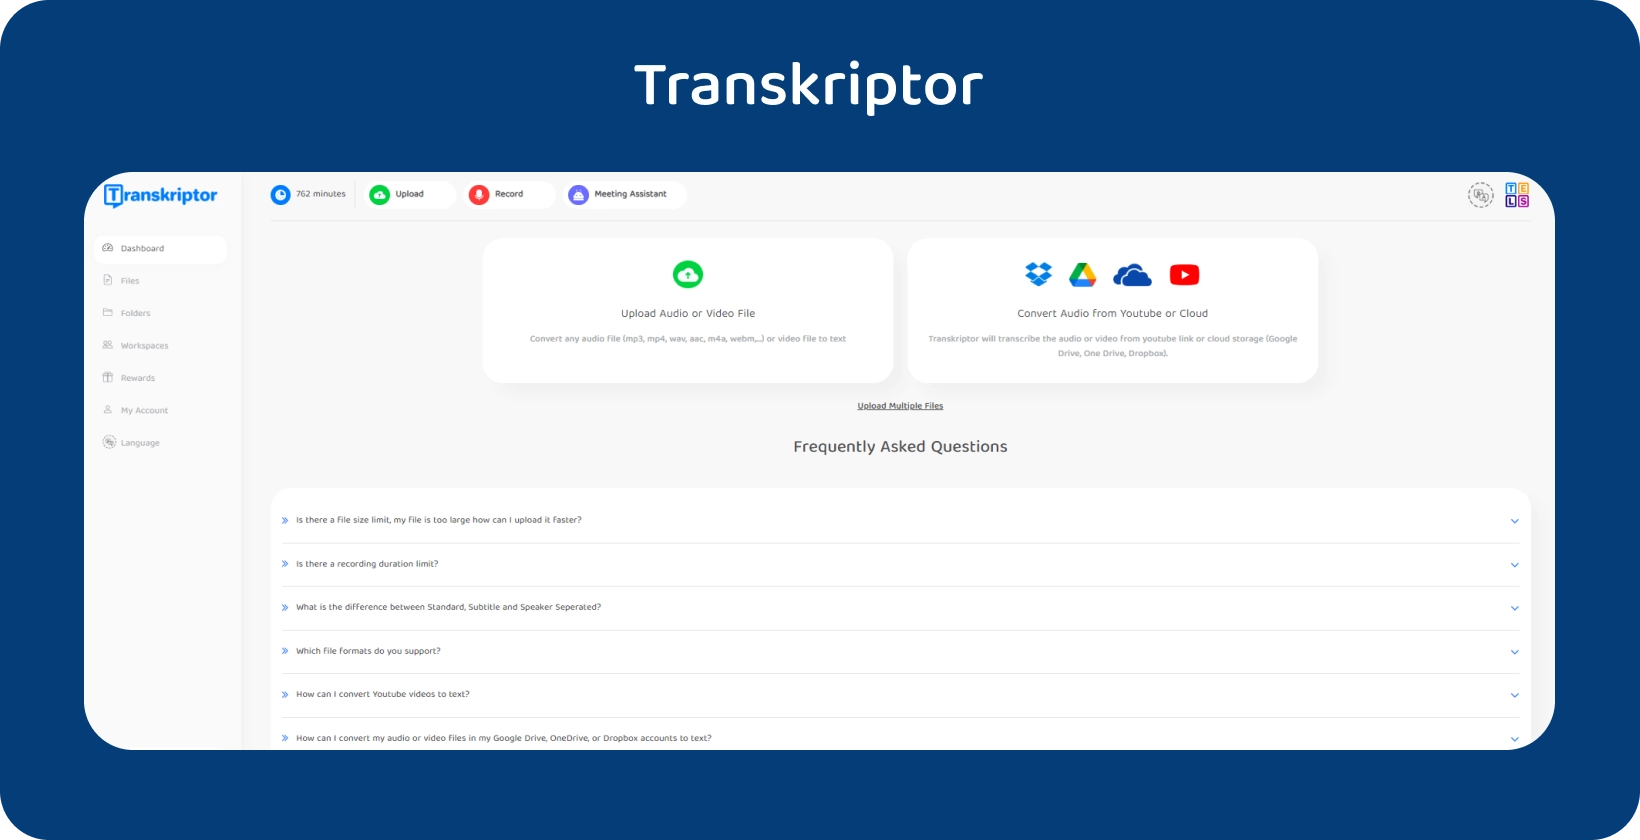 Interfața Transkriptor promovează serviciul său de conversie audio-text.